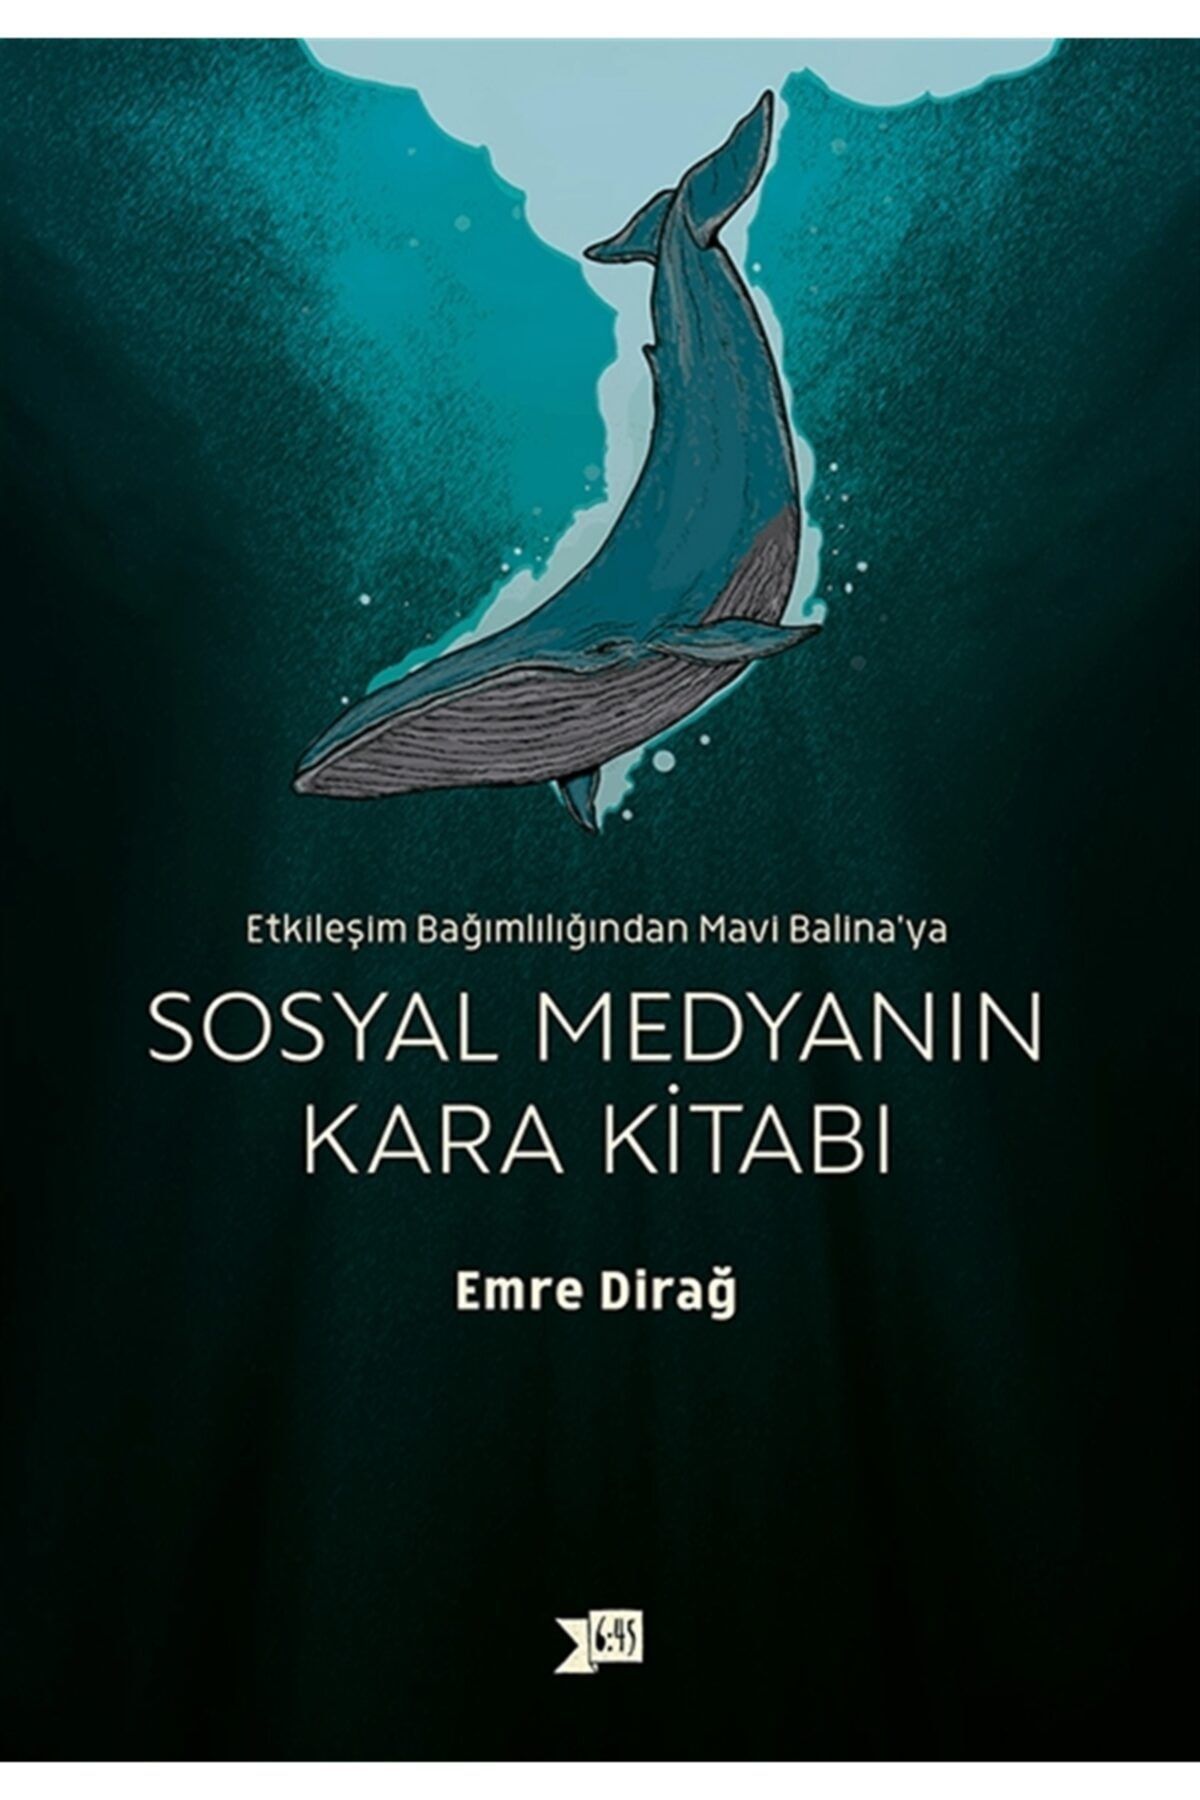 Altıkırkbeş Yayınları Sosyal Medyanın Kara Kitabı Etkileşim Bağımlılığından Mavi Balina'ya